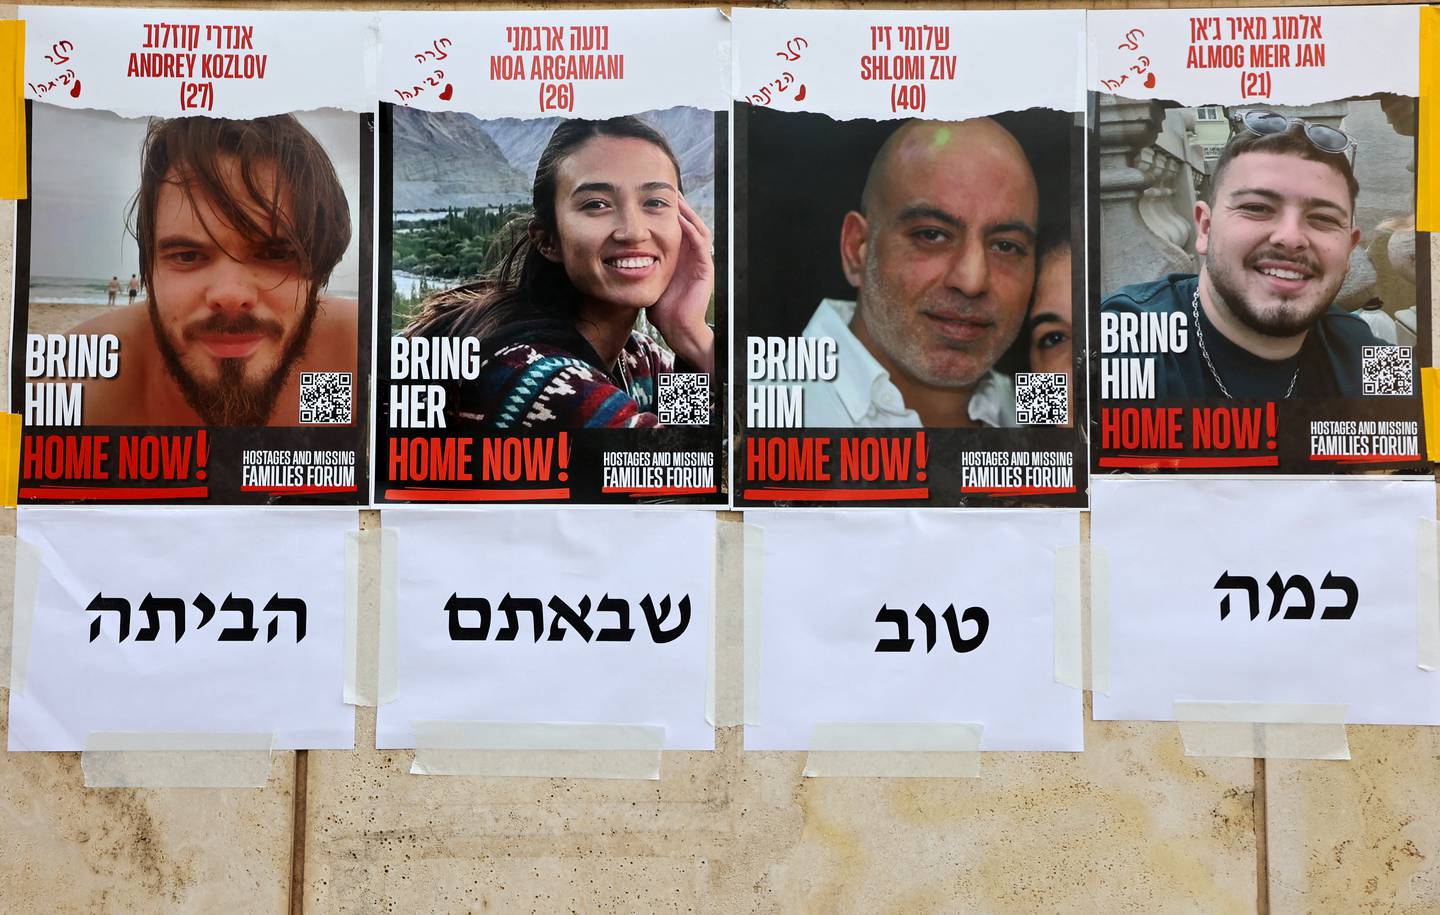 Carteles que dicen 'Home Now' (en casa ahora) que representan los retratos de los cuatro rehenes israelíes rescatados desde la izquierda: Andrey Kozlov, 27, Noa Argamani, 26, Shlomi Ziv, 41, y Almog Meir Jan, 22, están pegados en una pared en Tel Aviv.